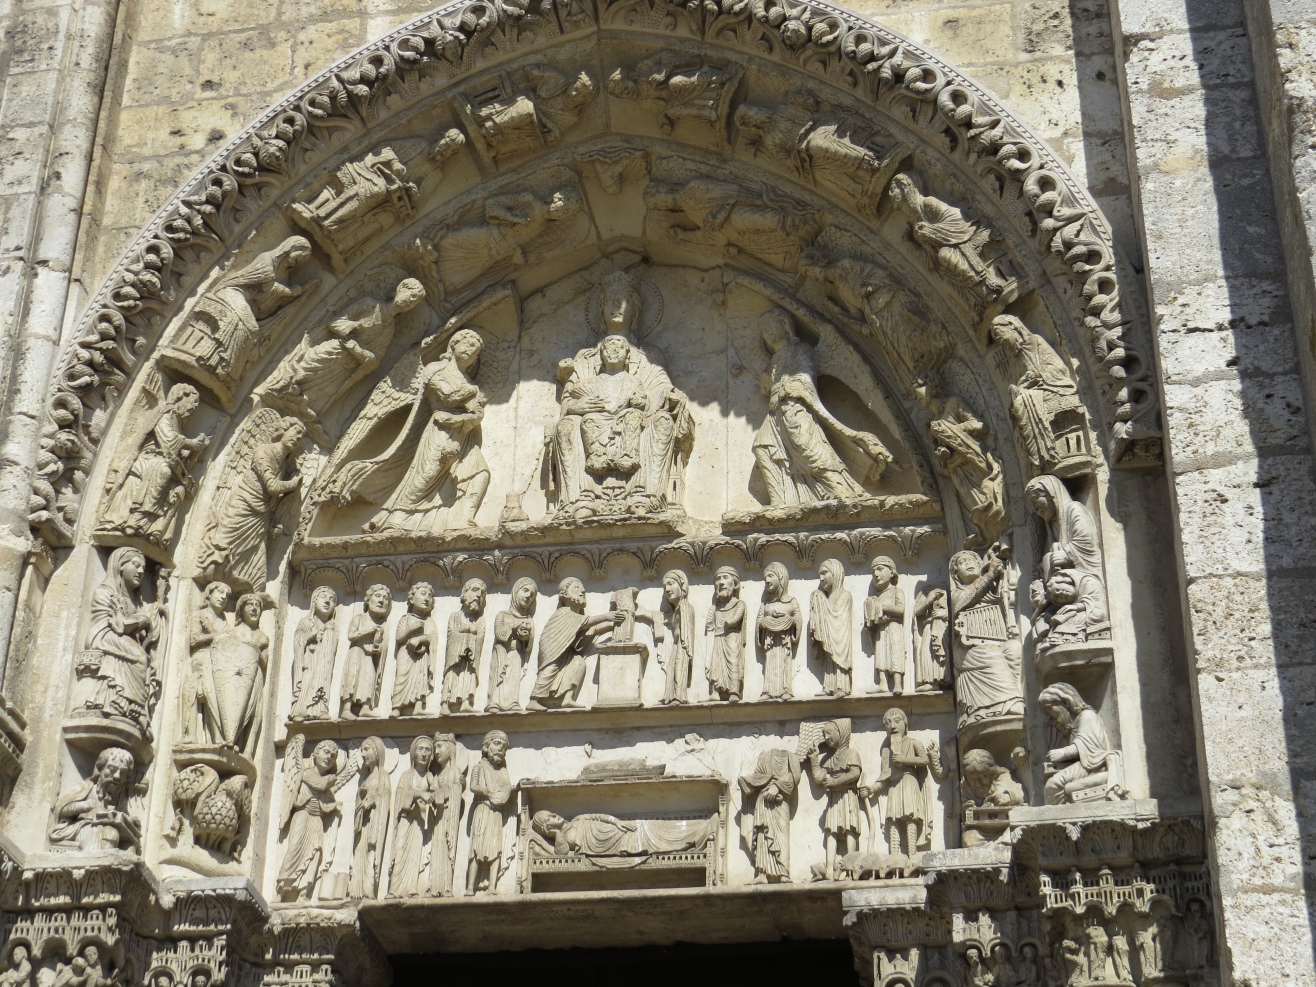 Cathdrale de Chartres, faade ouest. Portail de la Vierge  l'Enfant